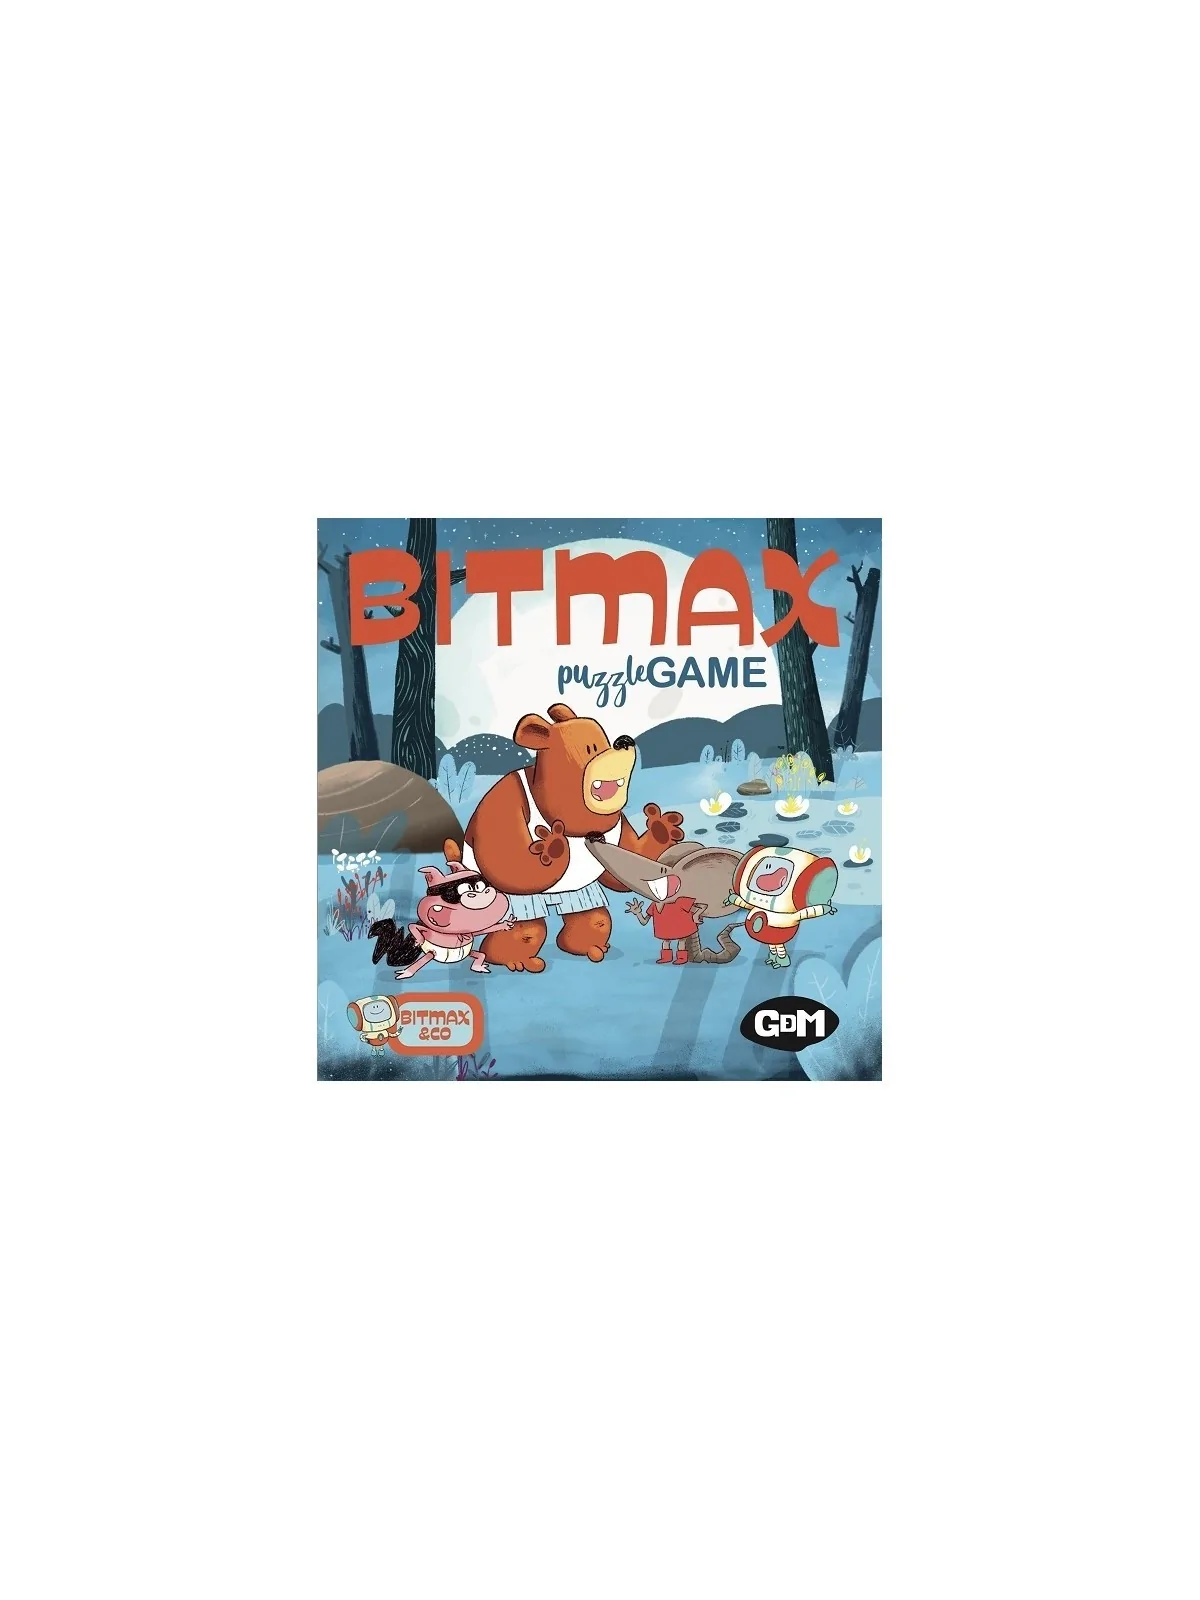 Comprar Bitmax Puzzle Game barato al mejor precio 18,89 € de Gdm